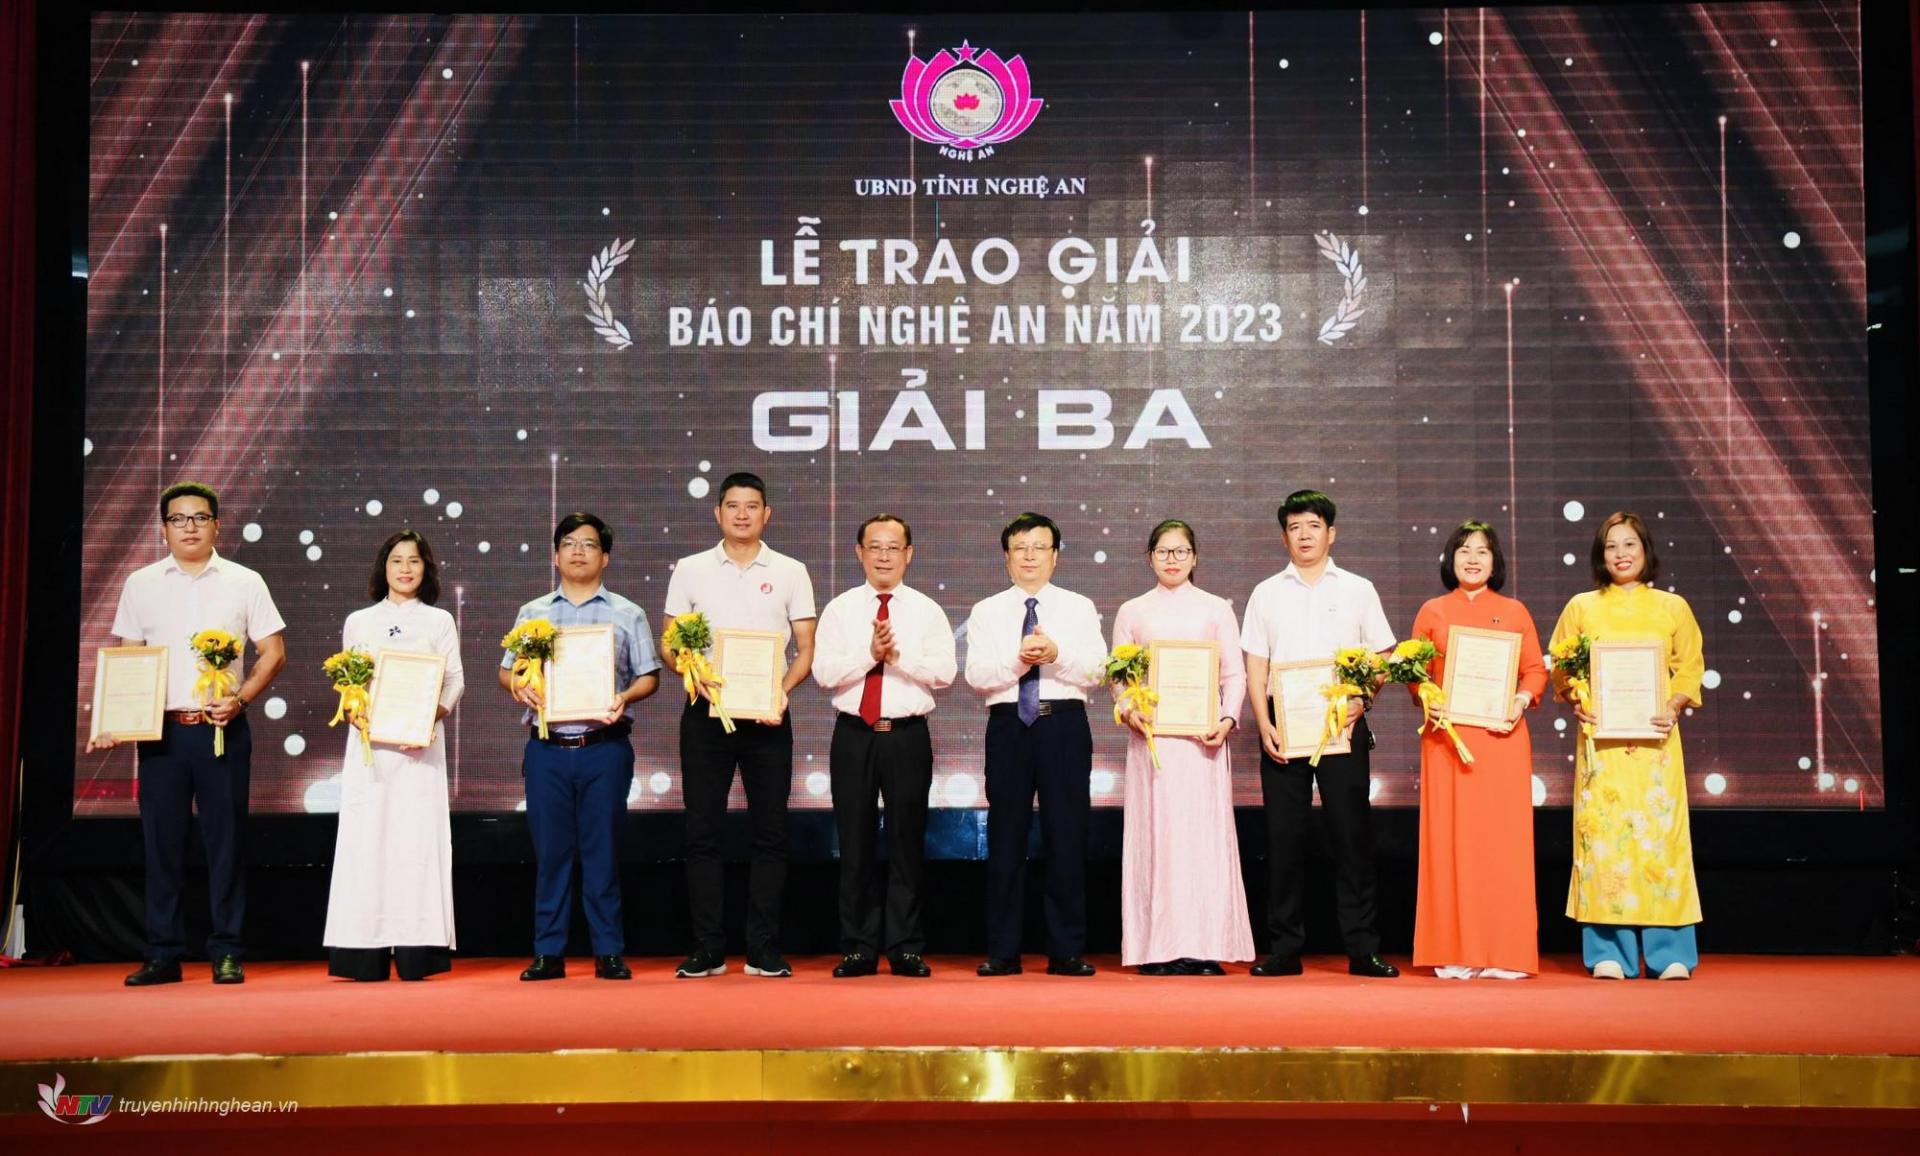 Đồng chí Phan Đức Đồng - Ủy viên BTV Tỉnh ủy, Bí thư Thành ủy Vinh và đồng chí Bùi Đình Long - Phó Chủ tịch UBND tỉnh trao giải Ba cho các tác giả, nhóm tác giả.